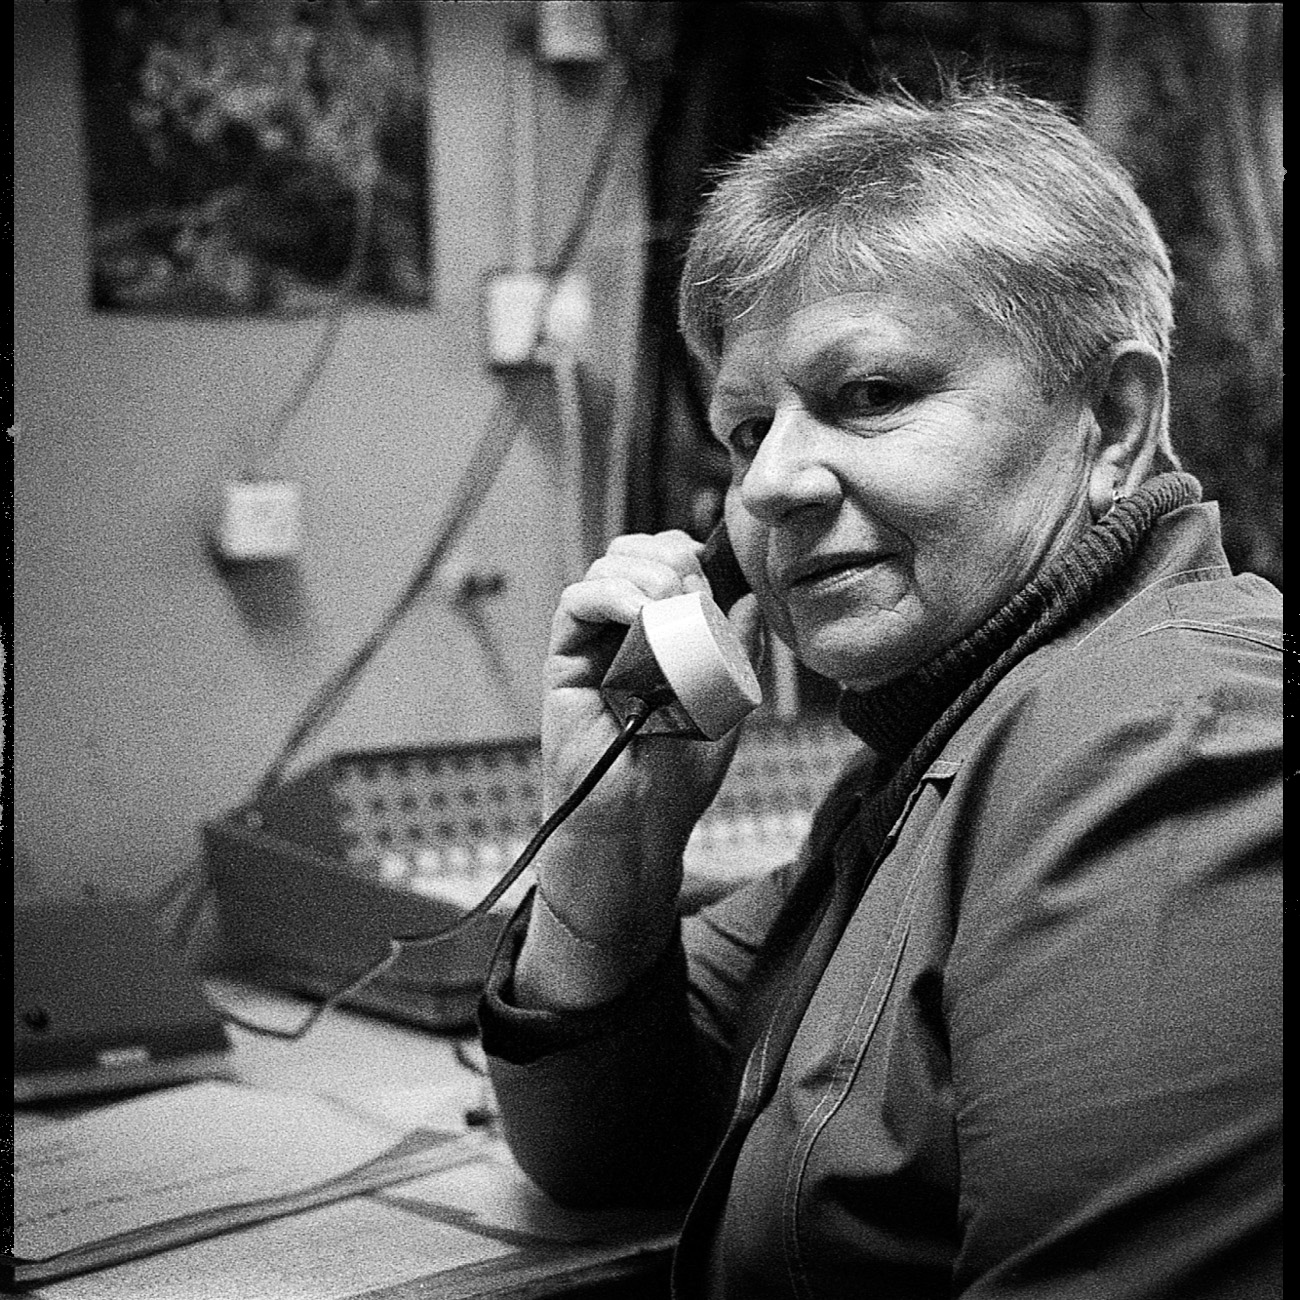 Вера Авсинејева је дошла у фабрику 1972. године као руковалац траке. „То је био престижан посао. Није био лак, али је био занимљив, на пример, као посао програмера и диспечера. Увек је било много тога што треба научити“, каже она. „Фабрика је радила нон-стоп, 24/7.“